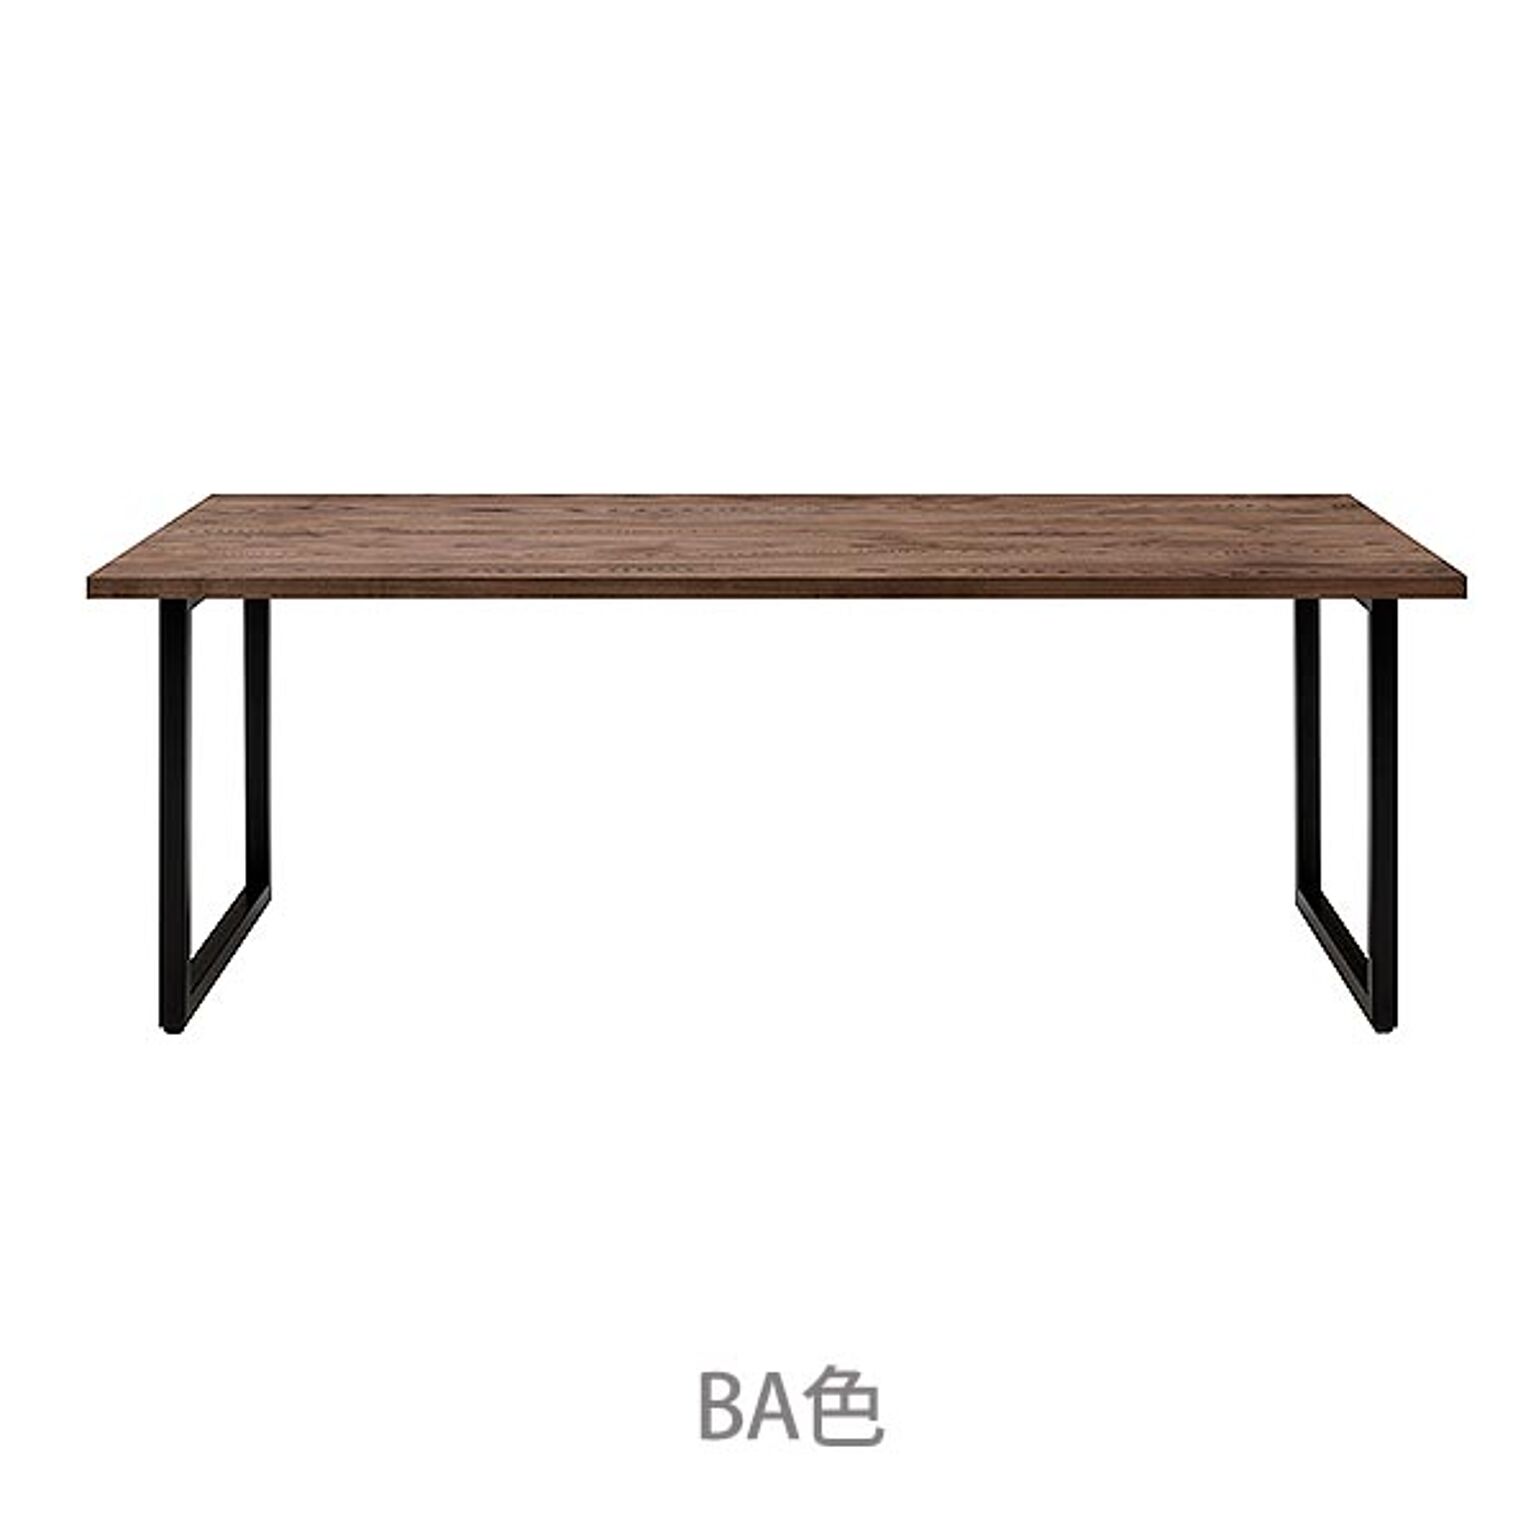 ダイニングテーブル 幅180 高さ72 天然木 ホワイトアッシュ材 オイル塗装 ブラックアイアン シンプル スッキリ デザイン 作業テーブル RAMA ラマ RMA-180